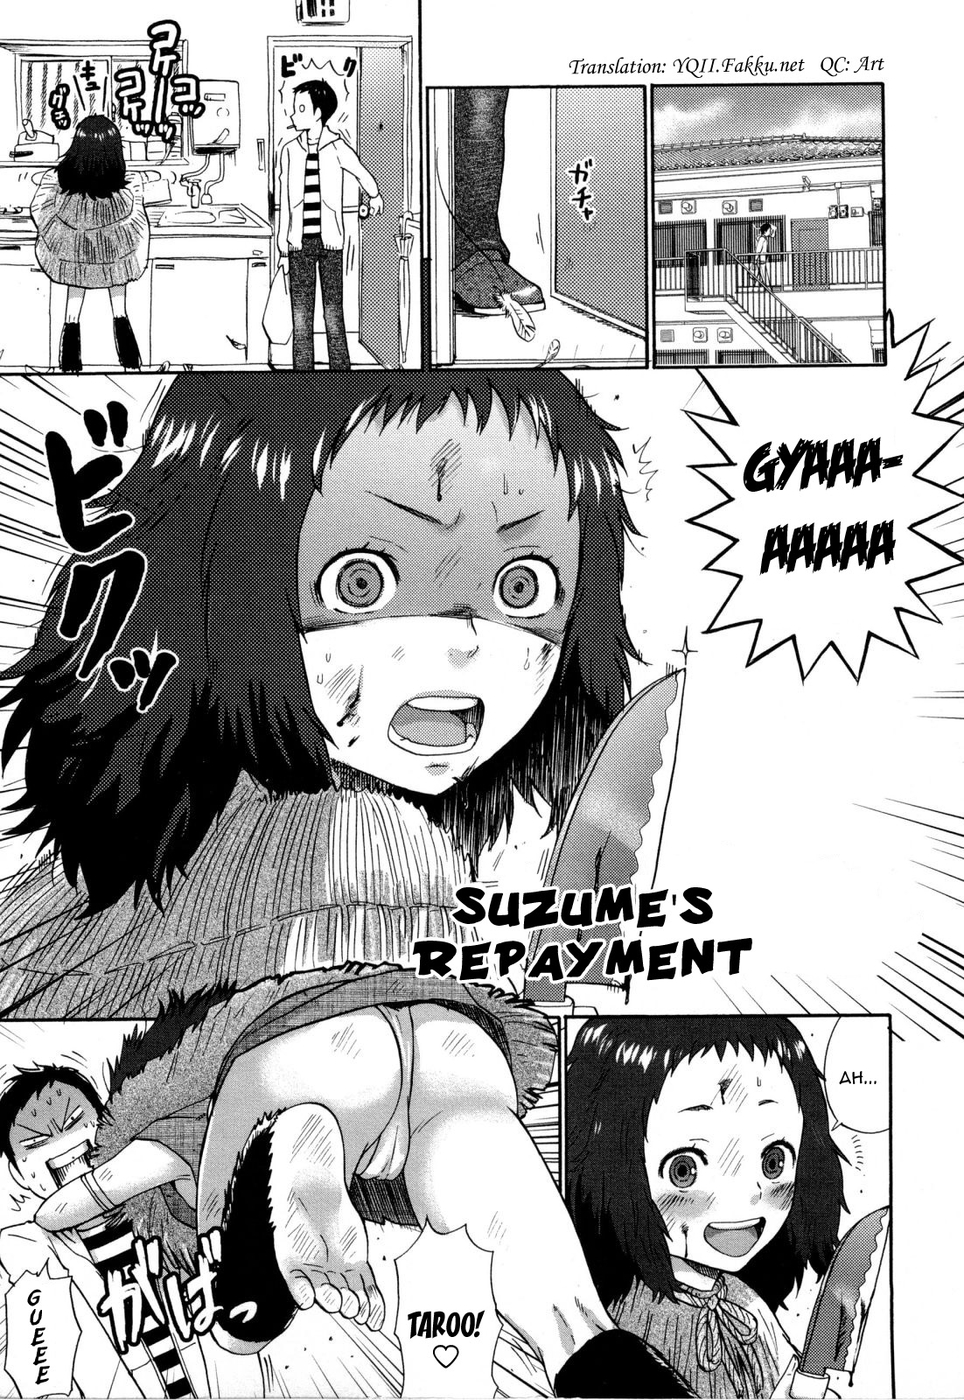 Hentai Manga Comic-Urahara-Chapter 12-Suzume's Repayment-1